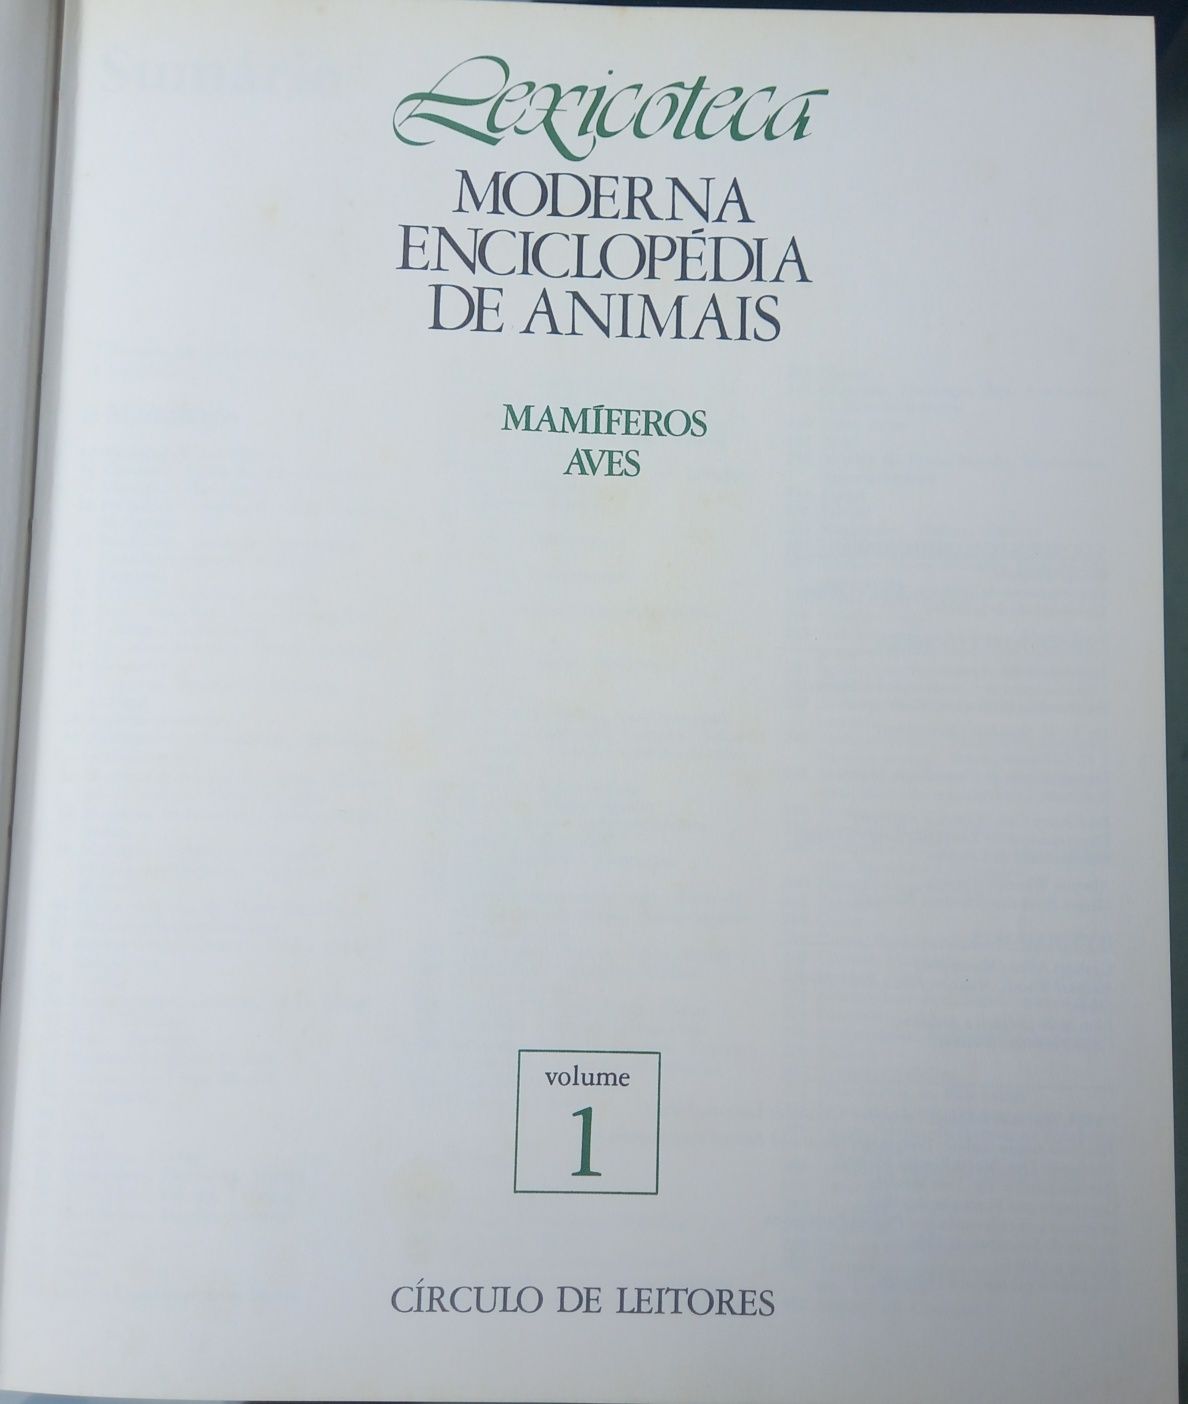 Moderna enciclopédia de animais lexicoteca